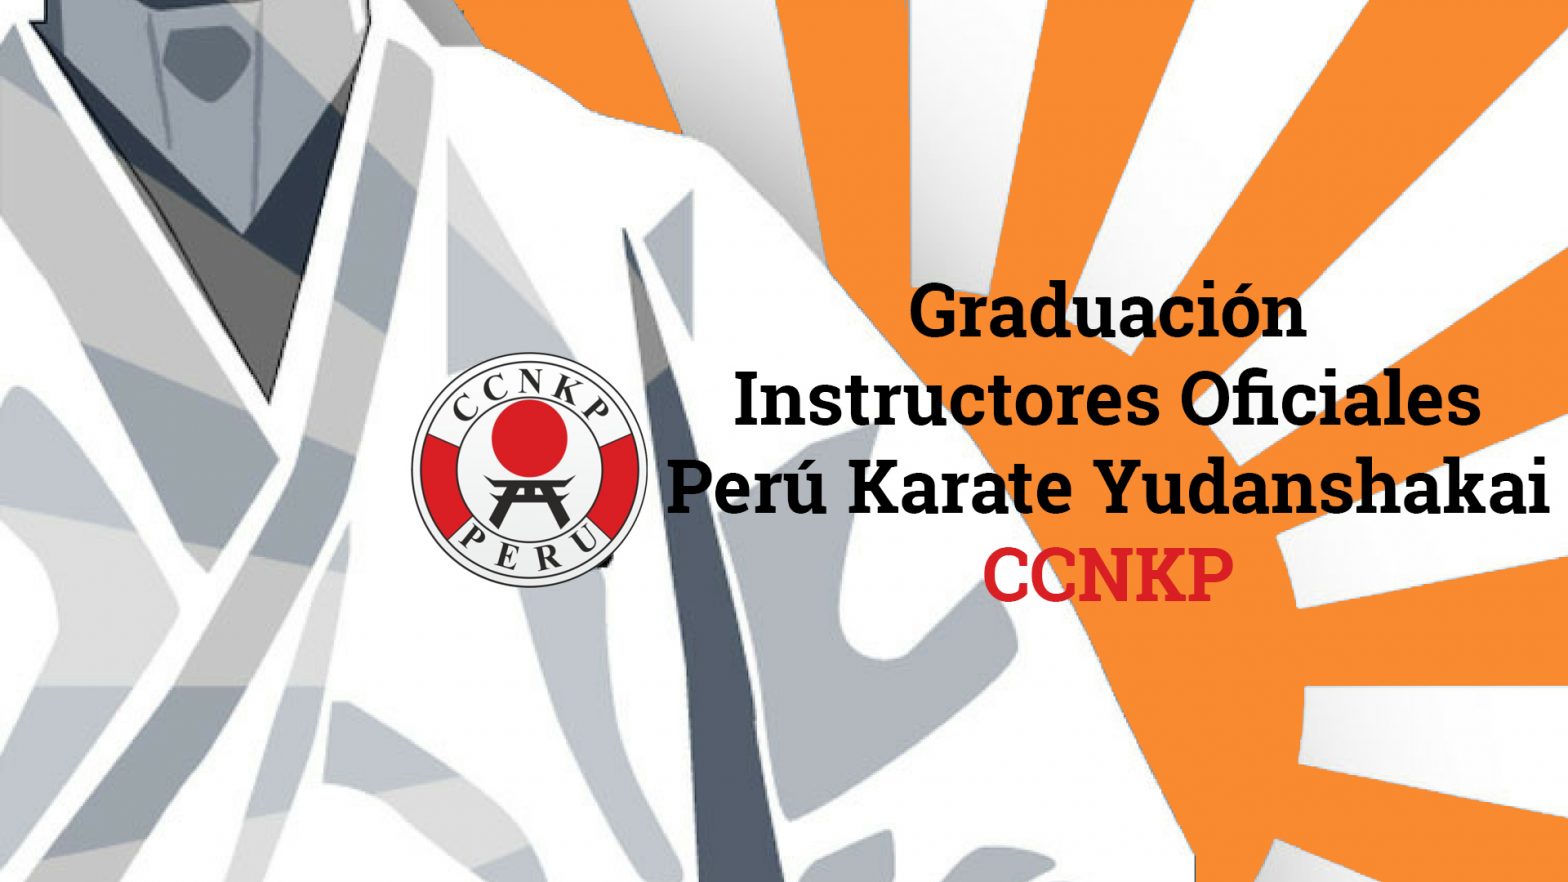 Graduación 2do Curso de Instructores Oficiales Perú Karate Yudanshakai - CCNKP